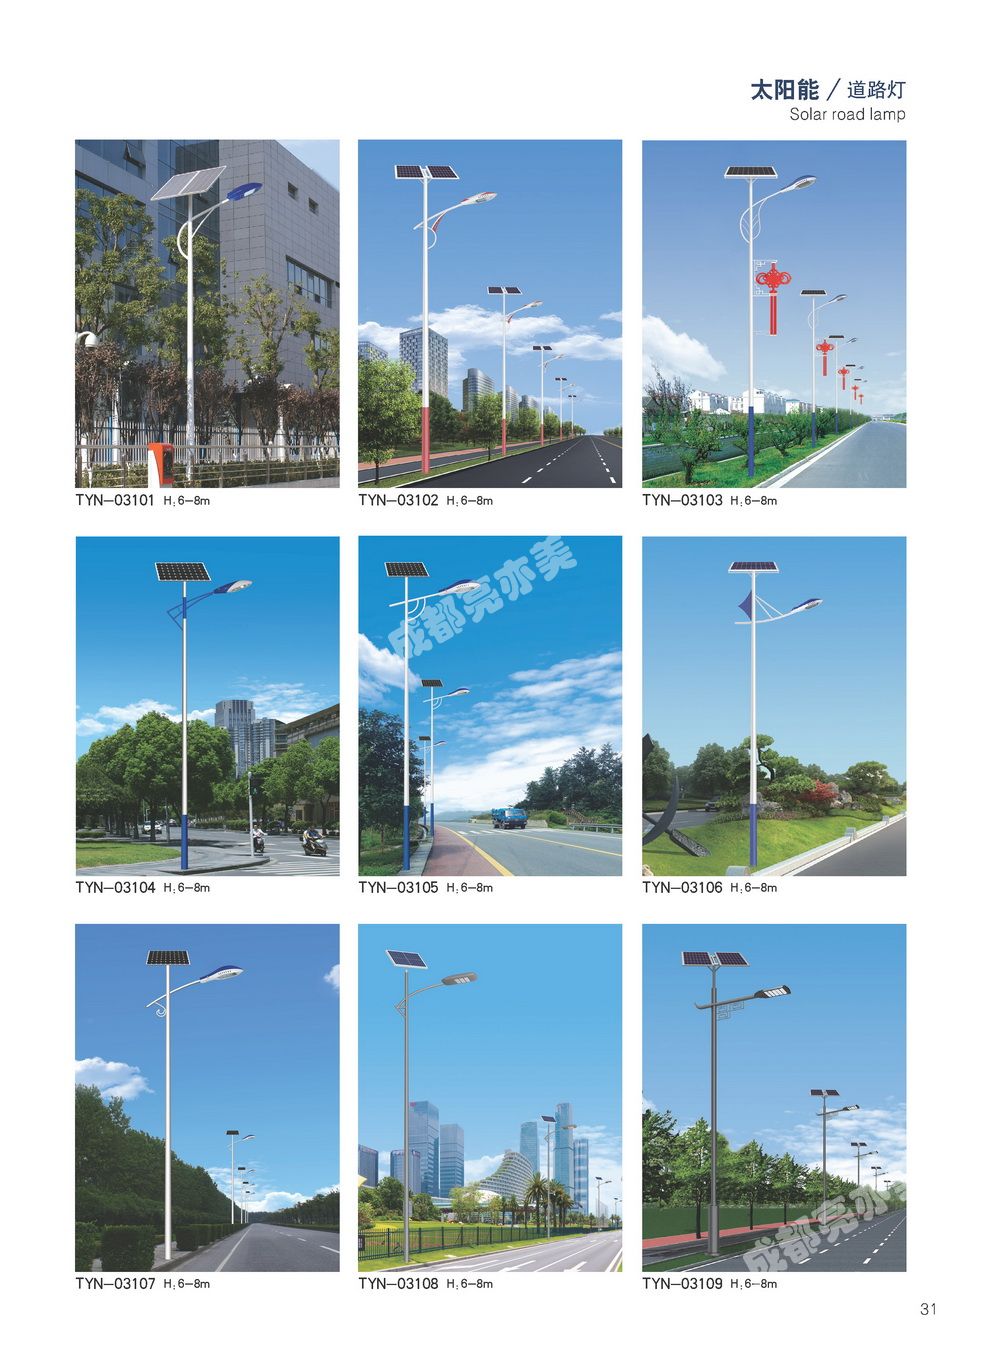 四川省太阳能路灯生产厂家/太阳能路灯设计方案生产销售